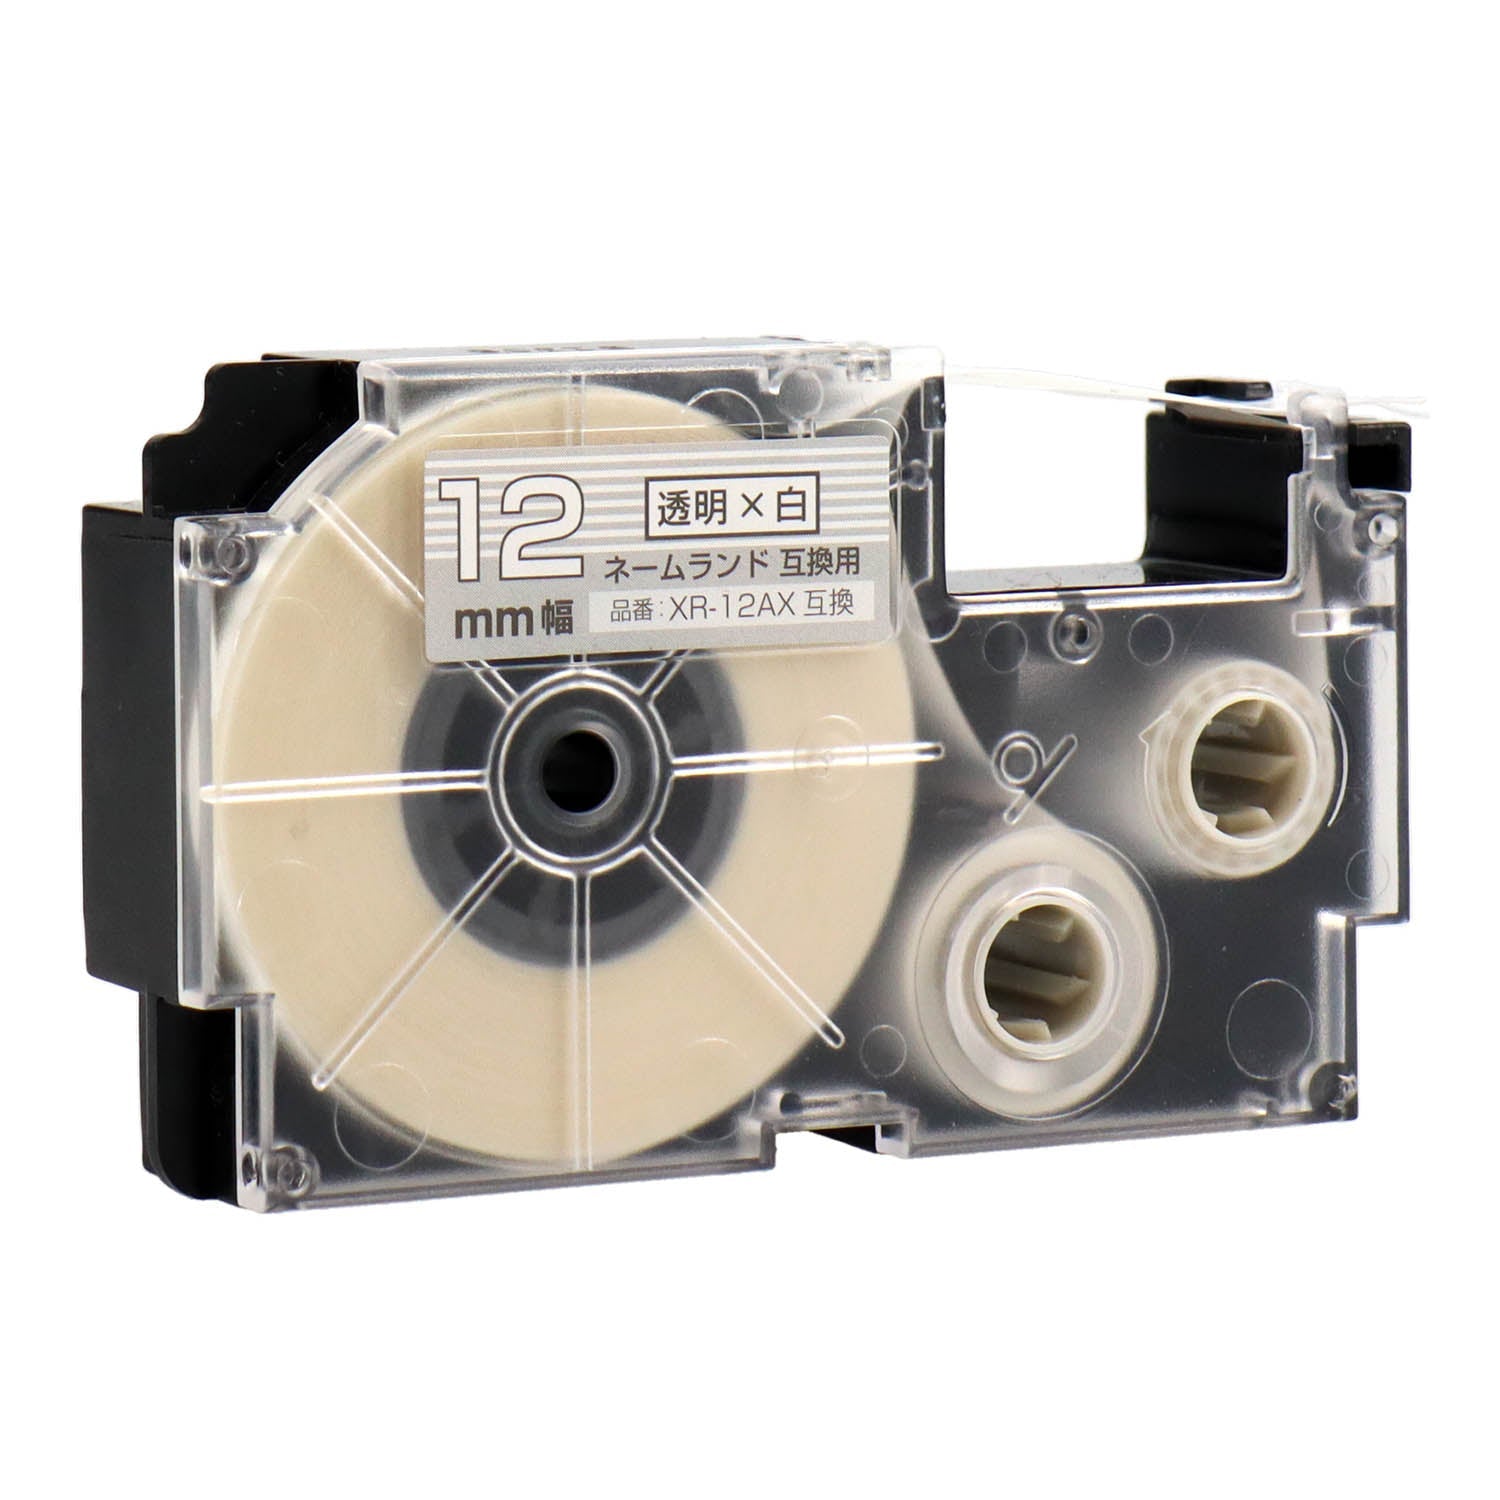 ネームランド用互換テープカートリッジ 透明×白文字 12mm